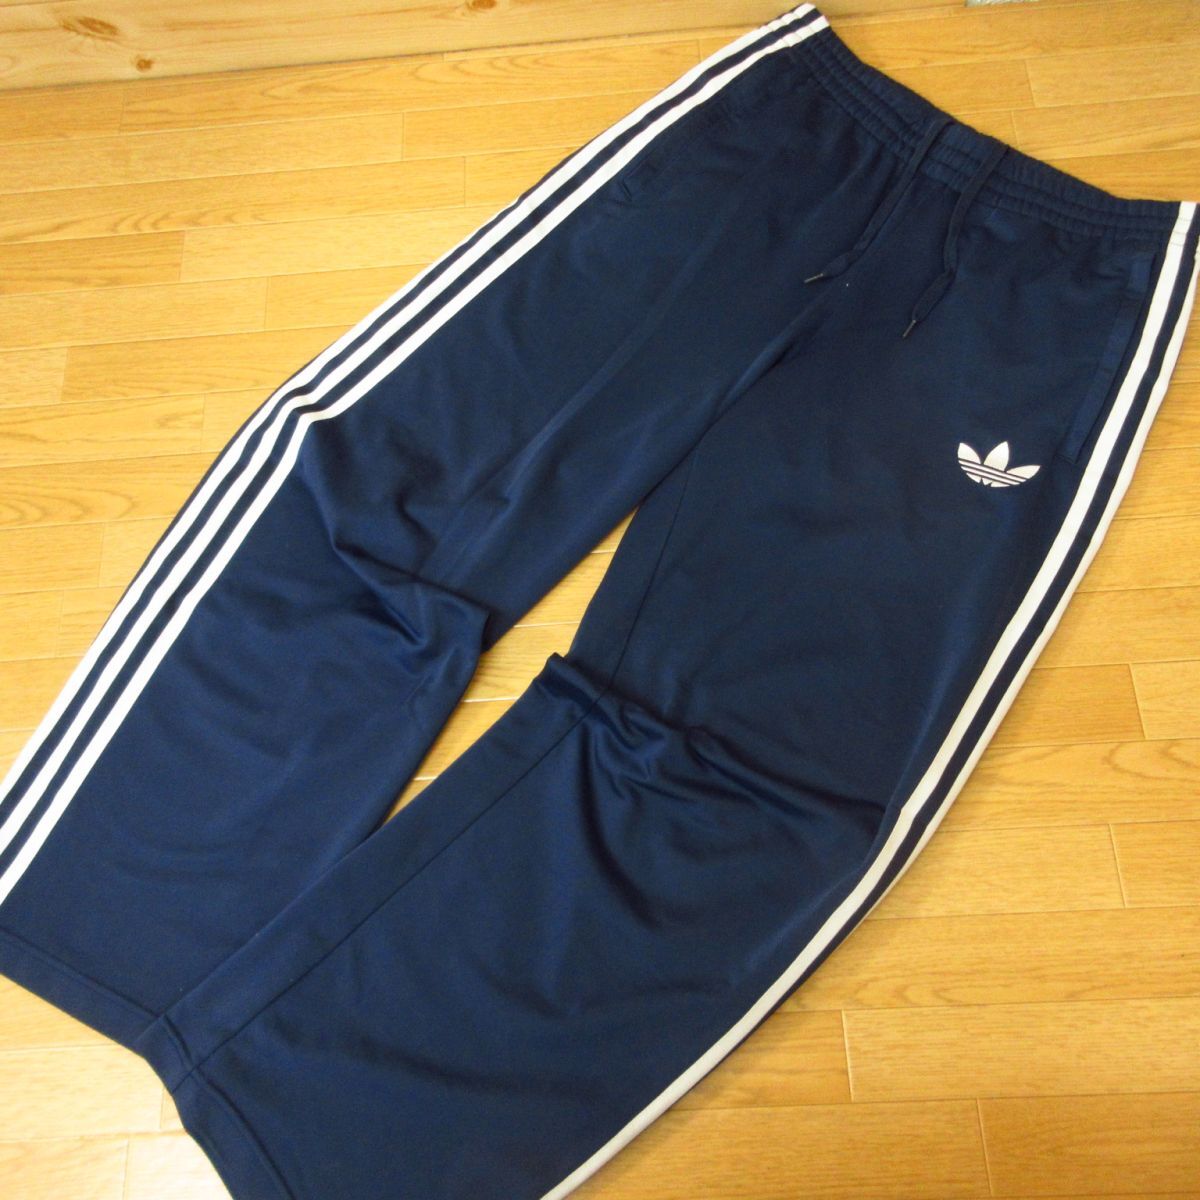 *adidas Originals Adidas Originals M 2 pcs set * jogger & truck pants jersey three leaf to ref . il * men's black x navy blue *C1411